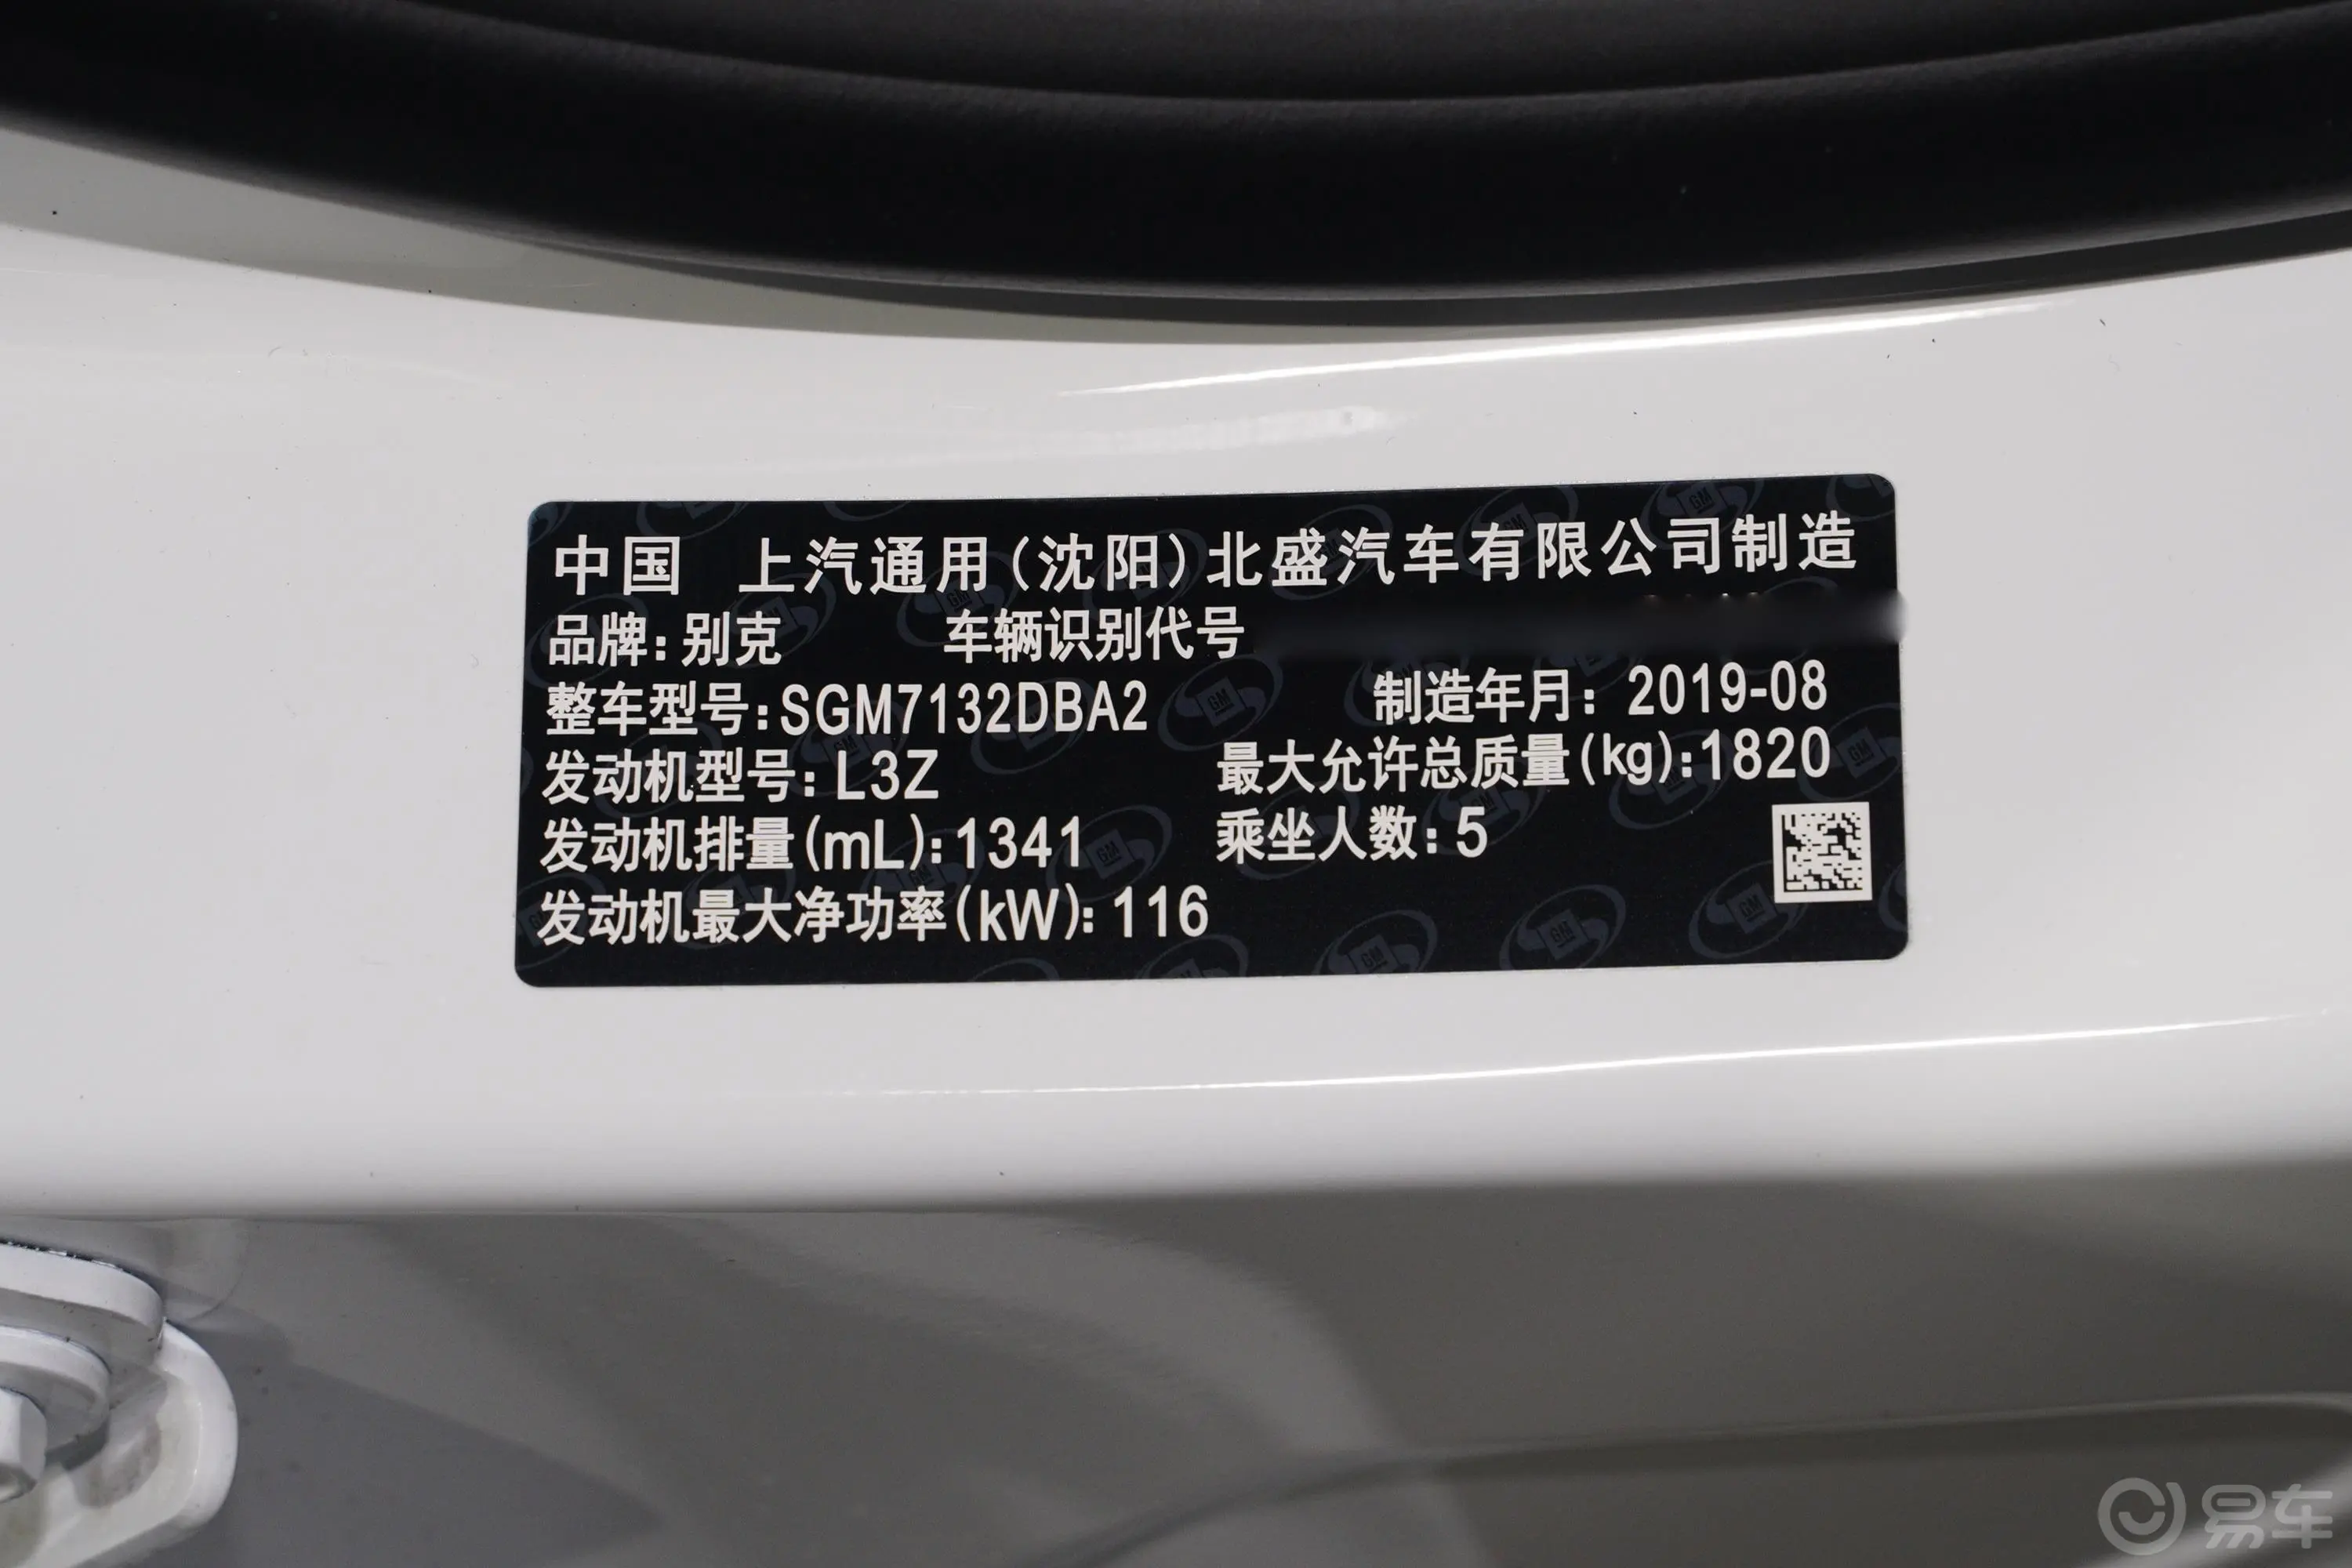 威朗三厢 20T CVT 豪华型车辆信息铭牌